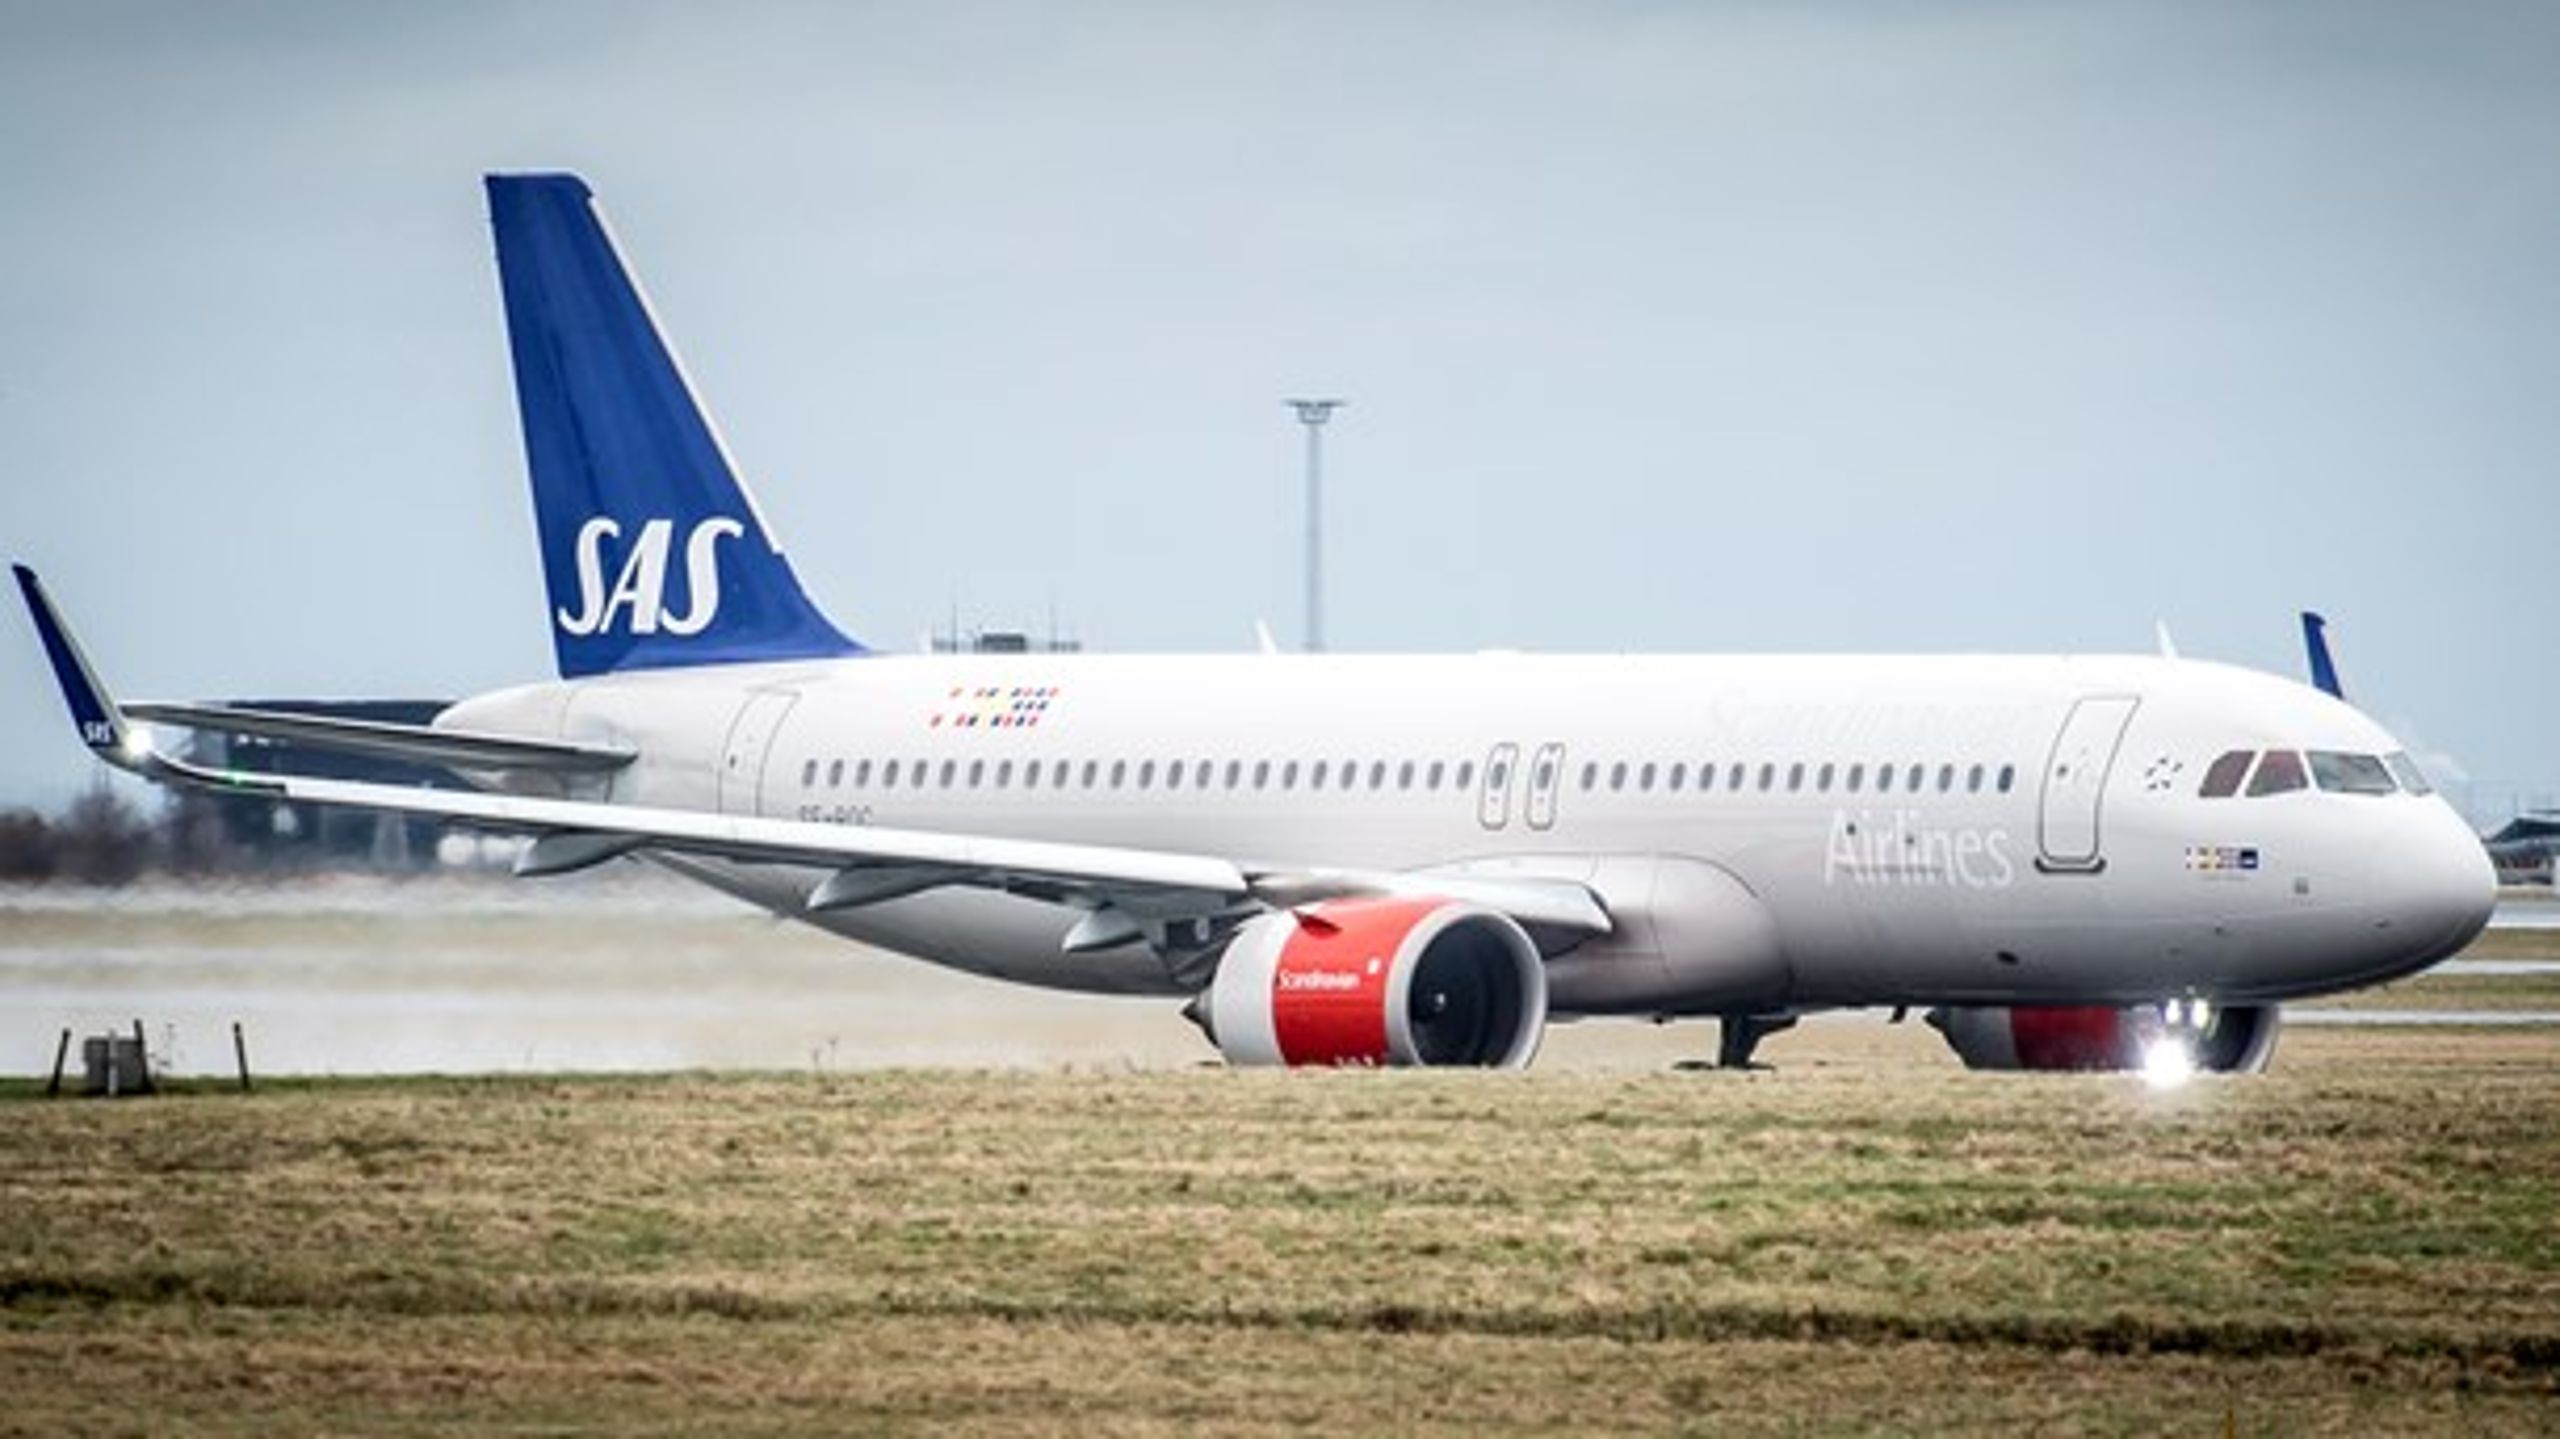 Nyt udspil fra SAS bør være det startskud, der vækker Christiansborg og får sat omstillingen af flysektoren i gang, mener Brintbranchen.